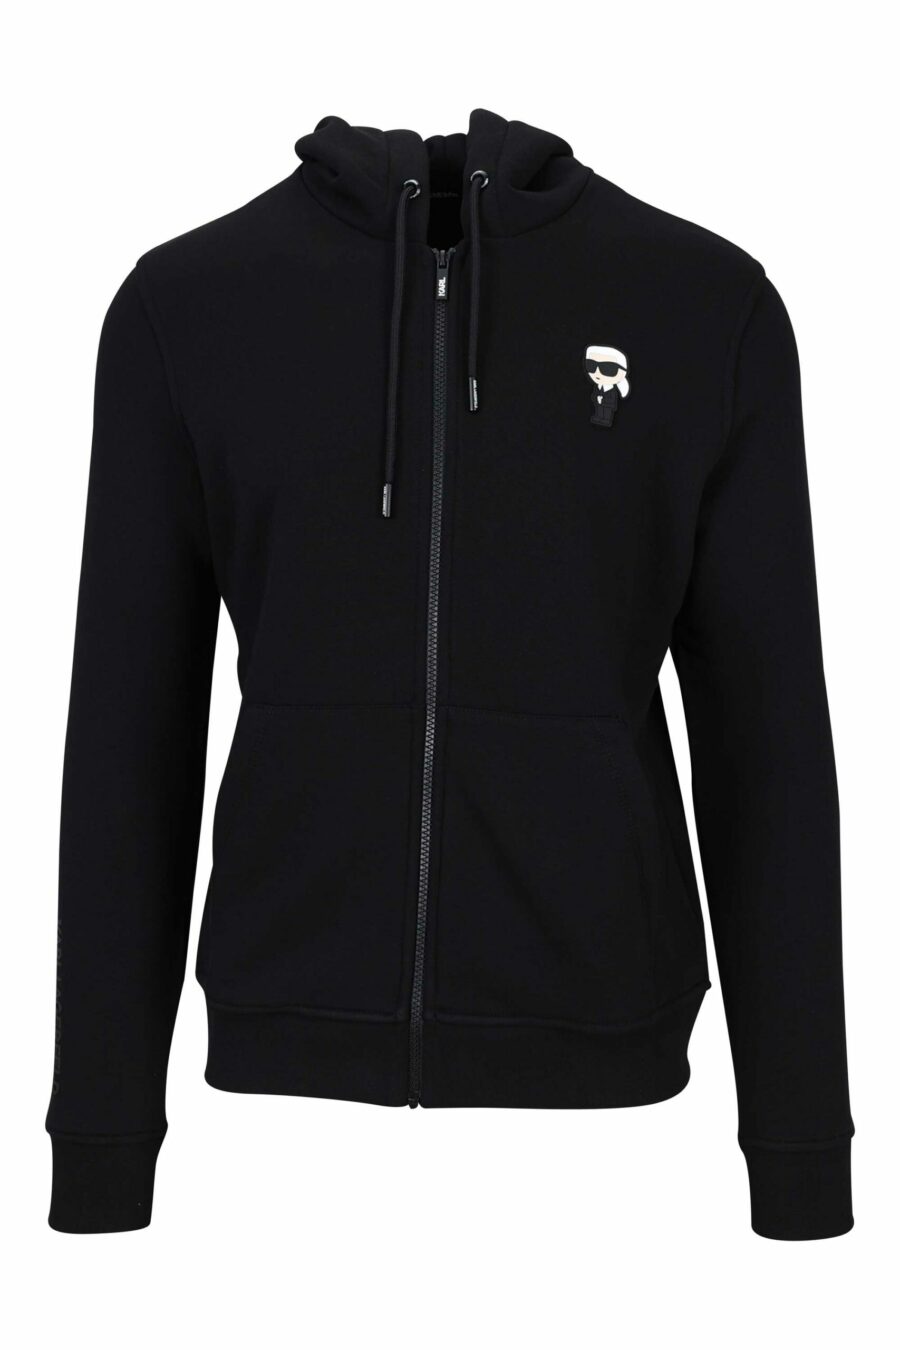 Schwarzes Kapuzensweatshirt mit Reißverschlüssen und Gummi-Mini-Logo - 4062226653459 1 skaliert